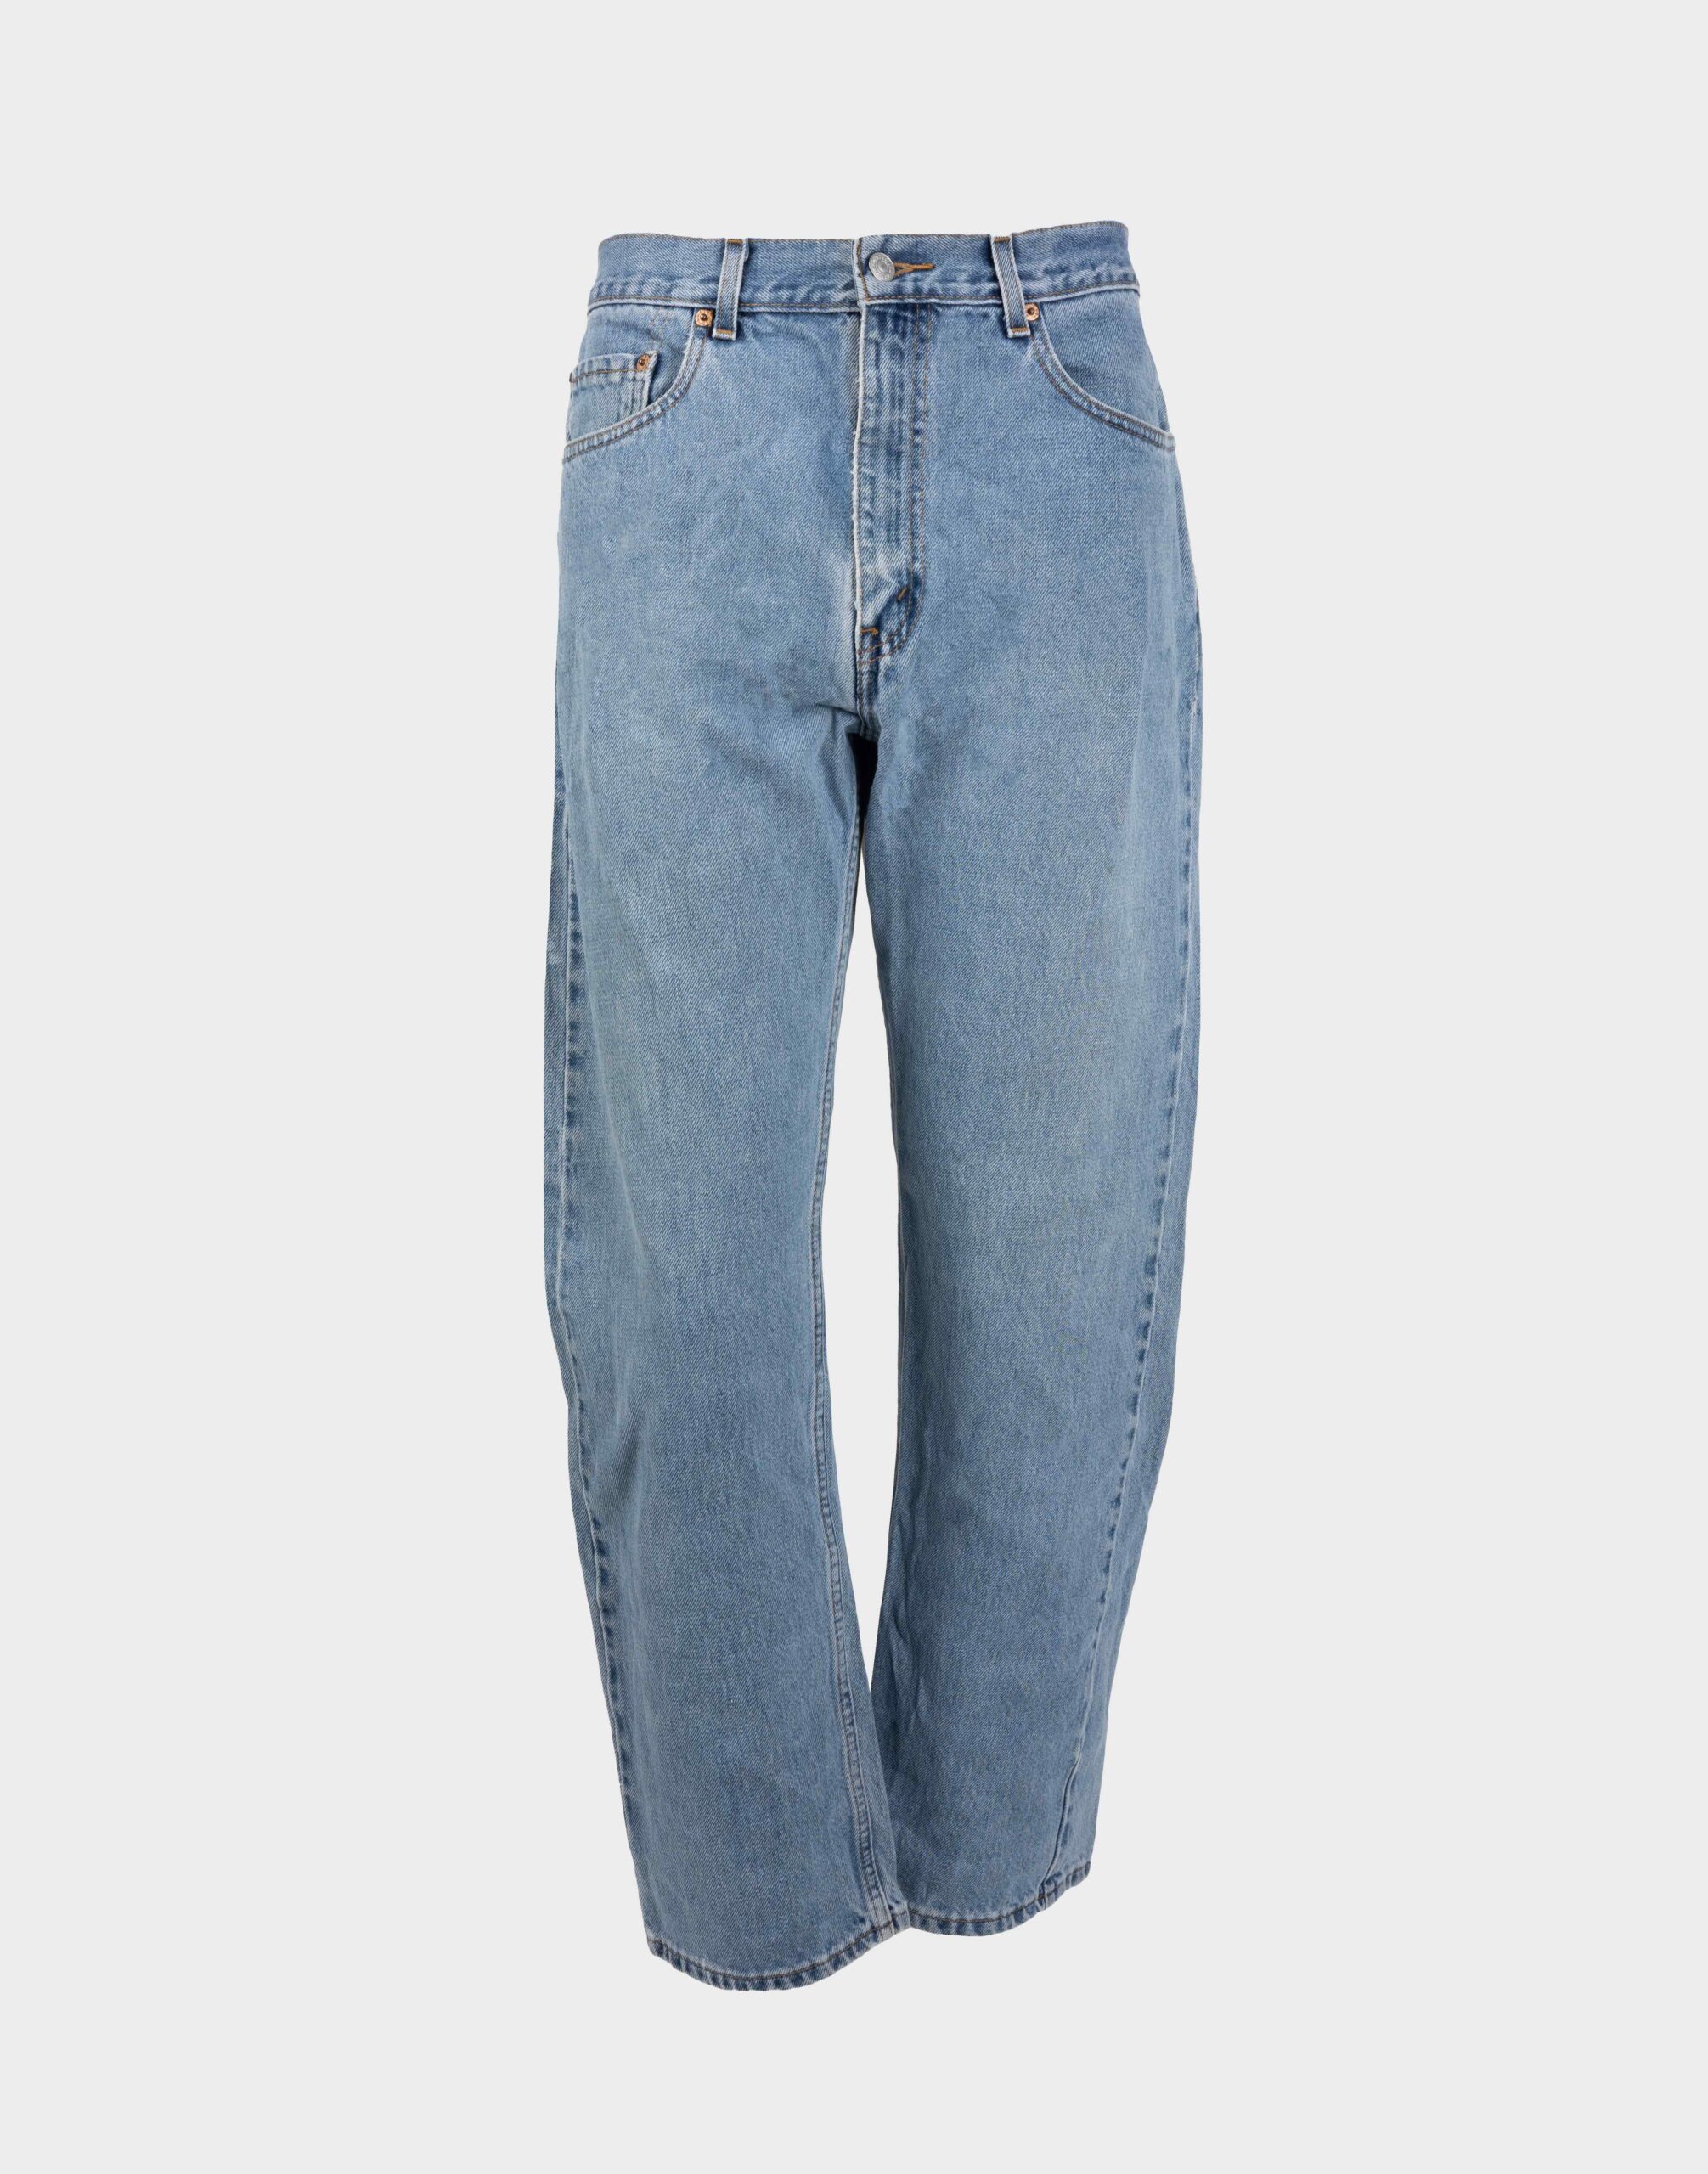 Men's high-waisted light denim pants by Levi's, model 505.